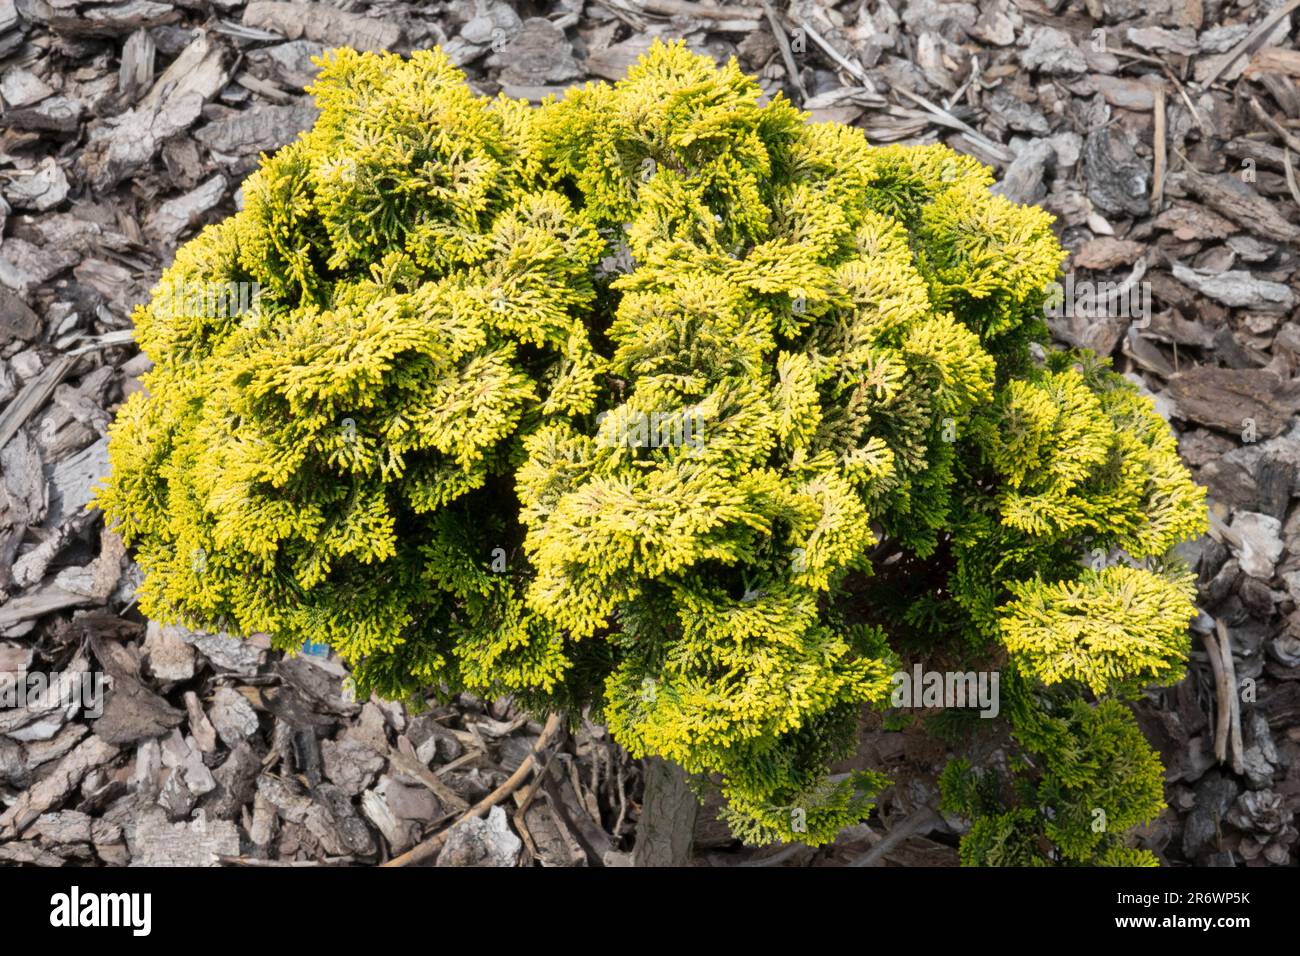 Jaune Or Chamaecyparis obtusa 'Butterball' miniature forme sphérique Conifer Chamaecyparis nain cyprès japonais à croissance lente Hinoki Banque D'Images